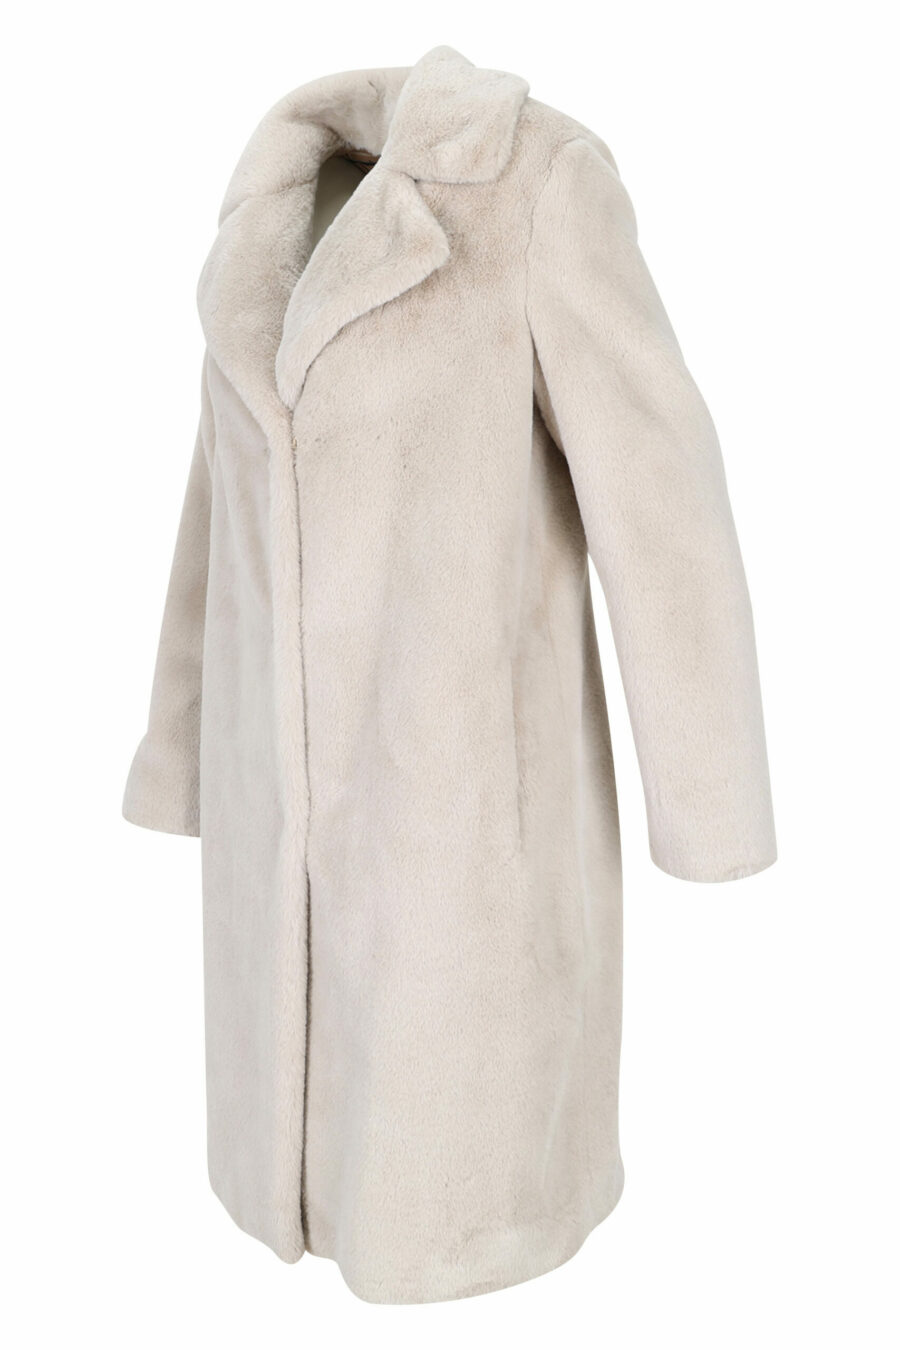 Abrigo blanco con pelo sintético efecto castor y forro interior monograma - 8055721649603 1 scaled